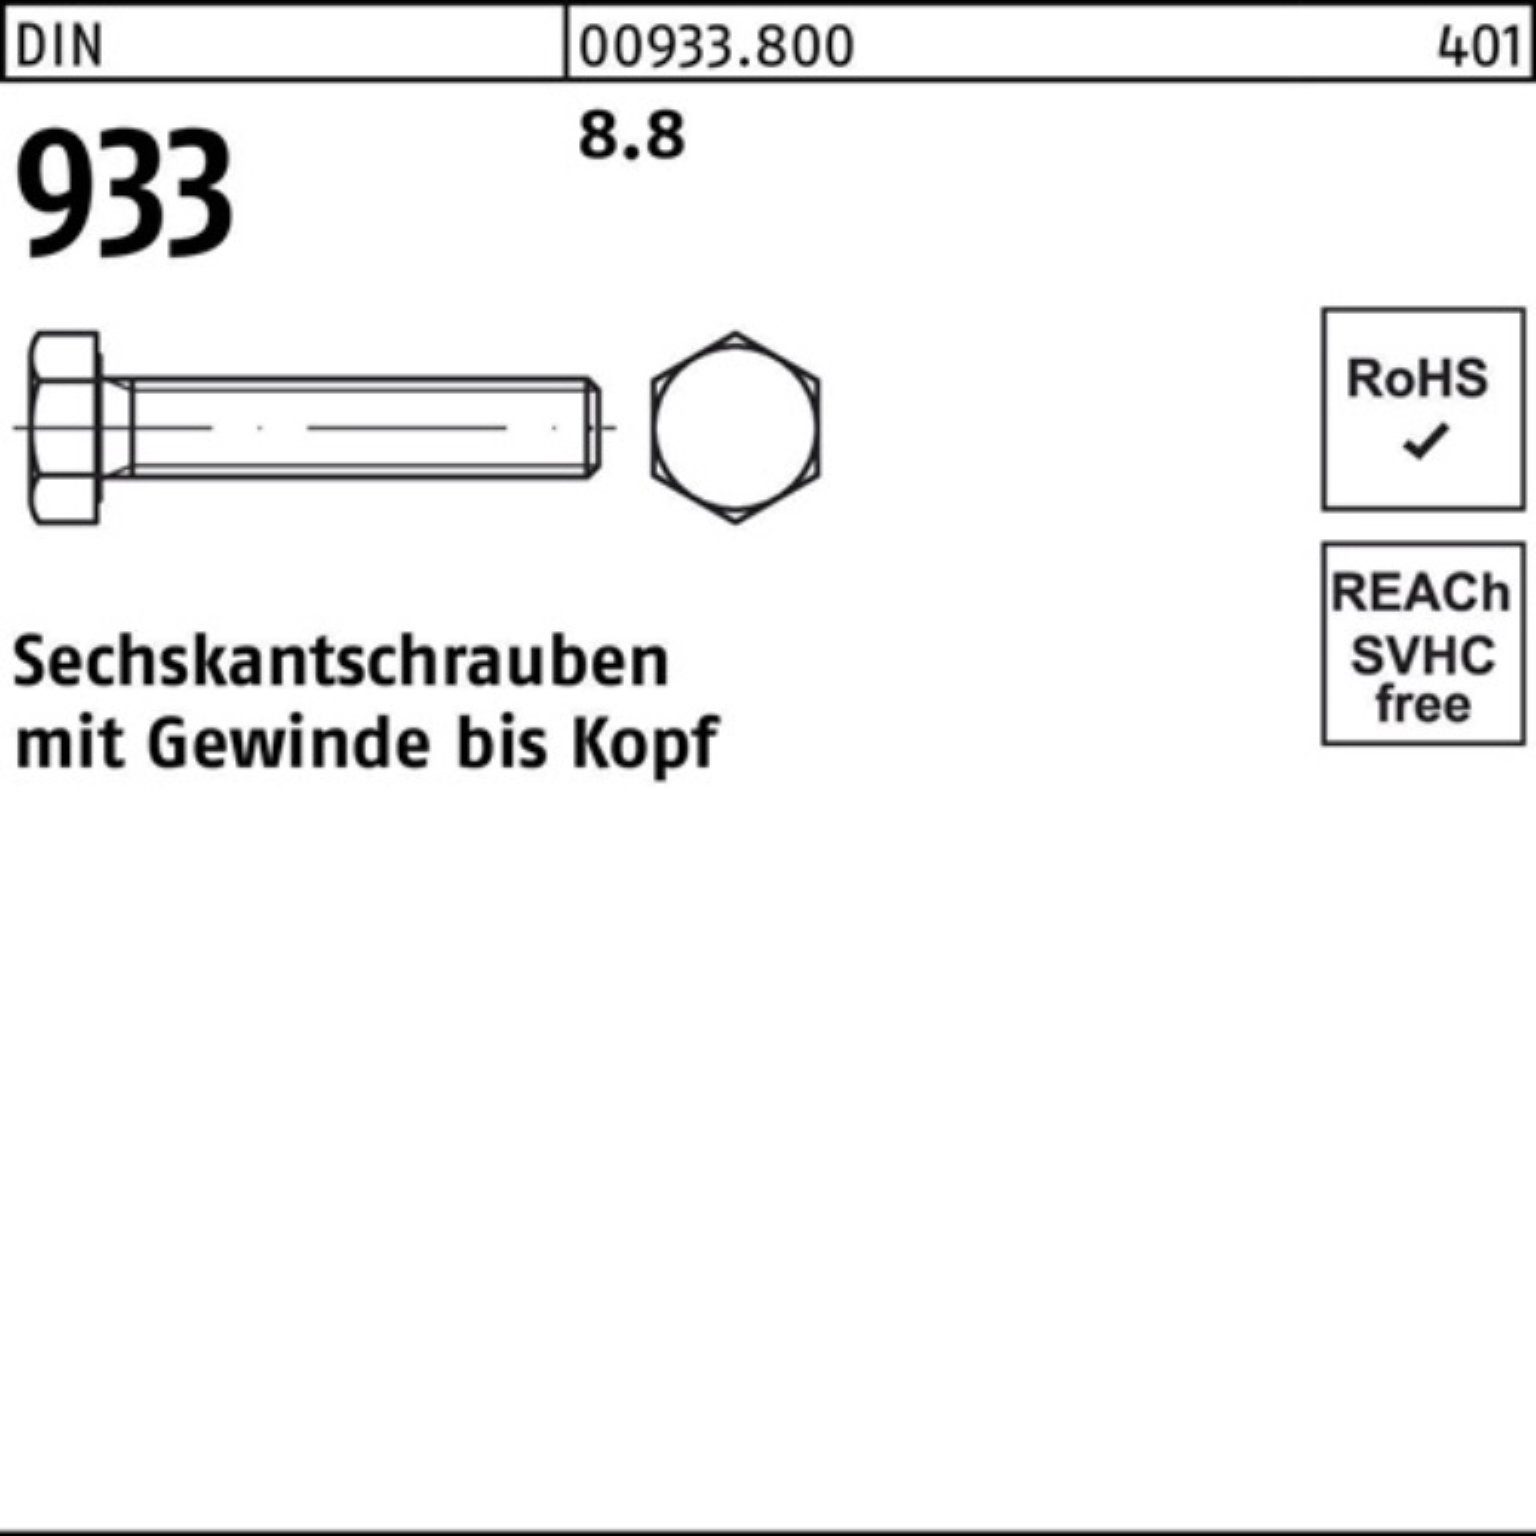 Reyher Sechskantschraube 100er Pack DIN 50 933 933 DIN Stück Sechskantschraube M4x 8.8 100 VG